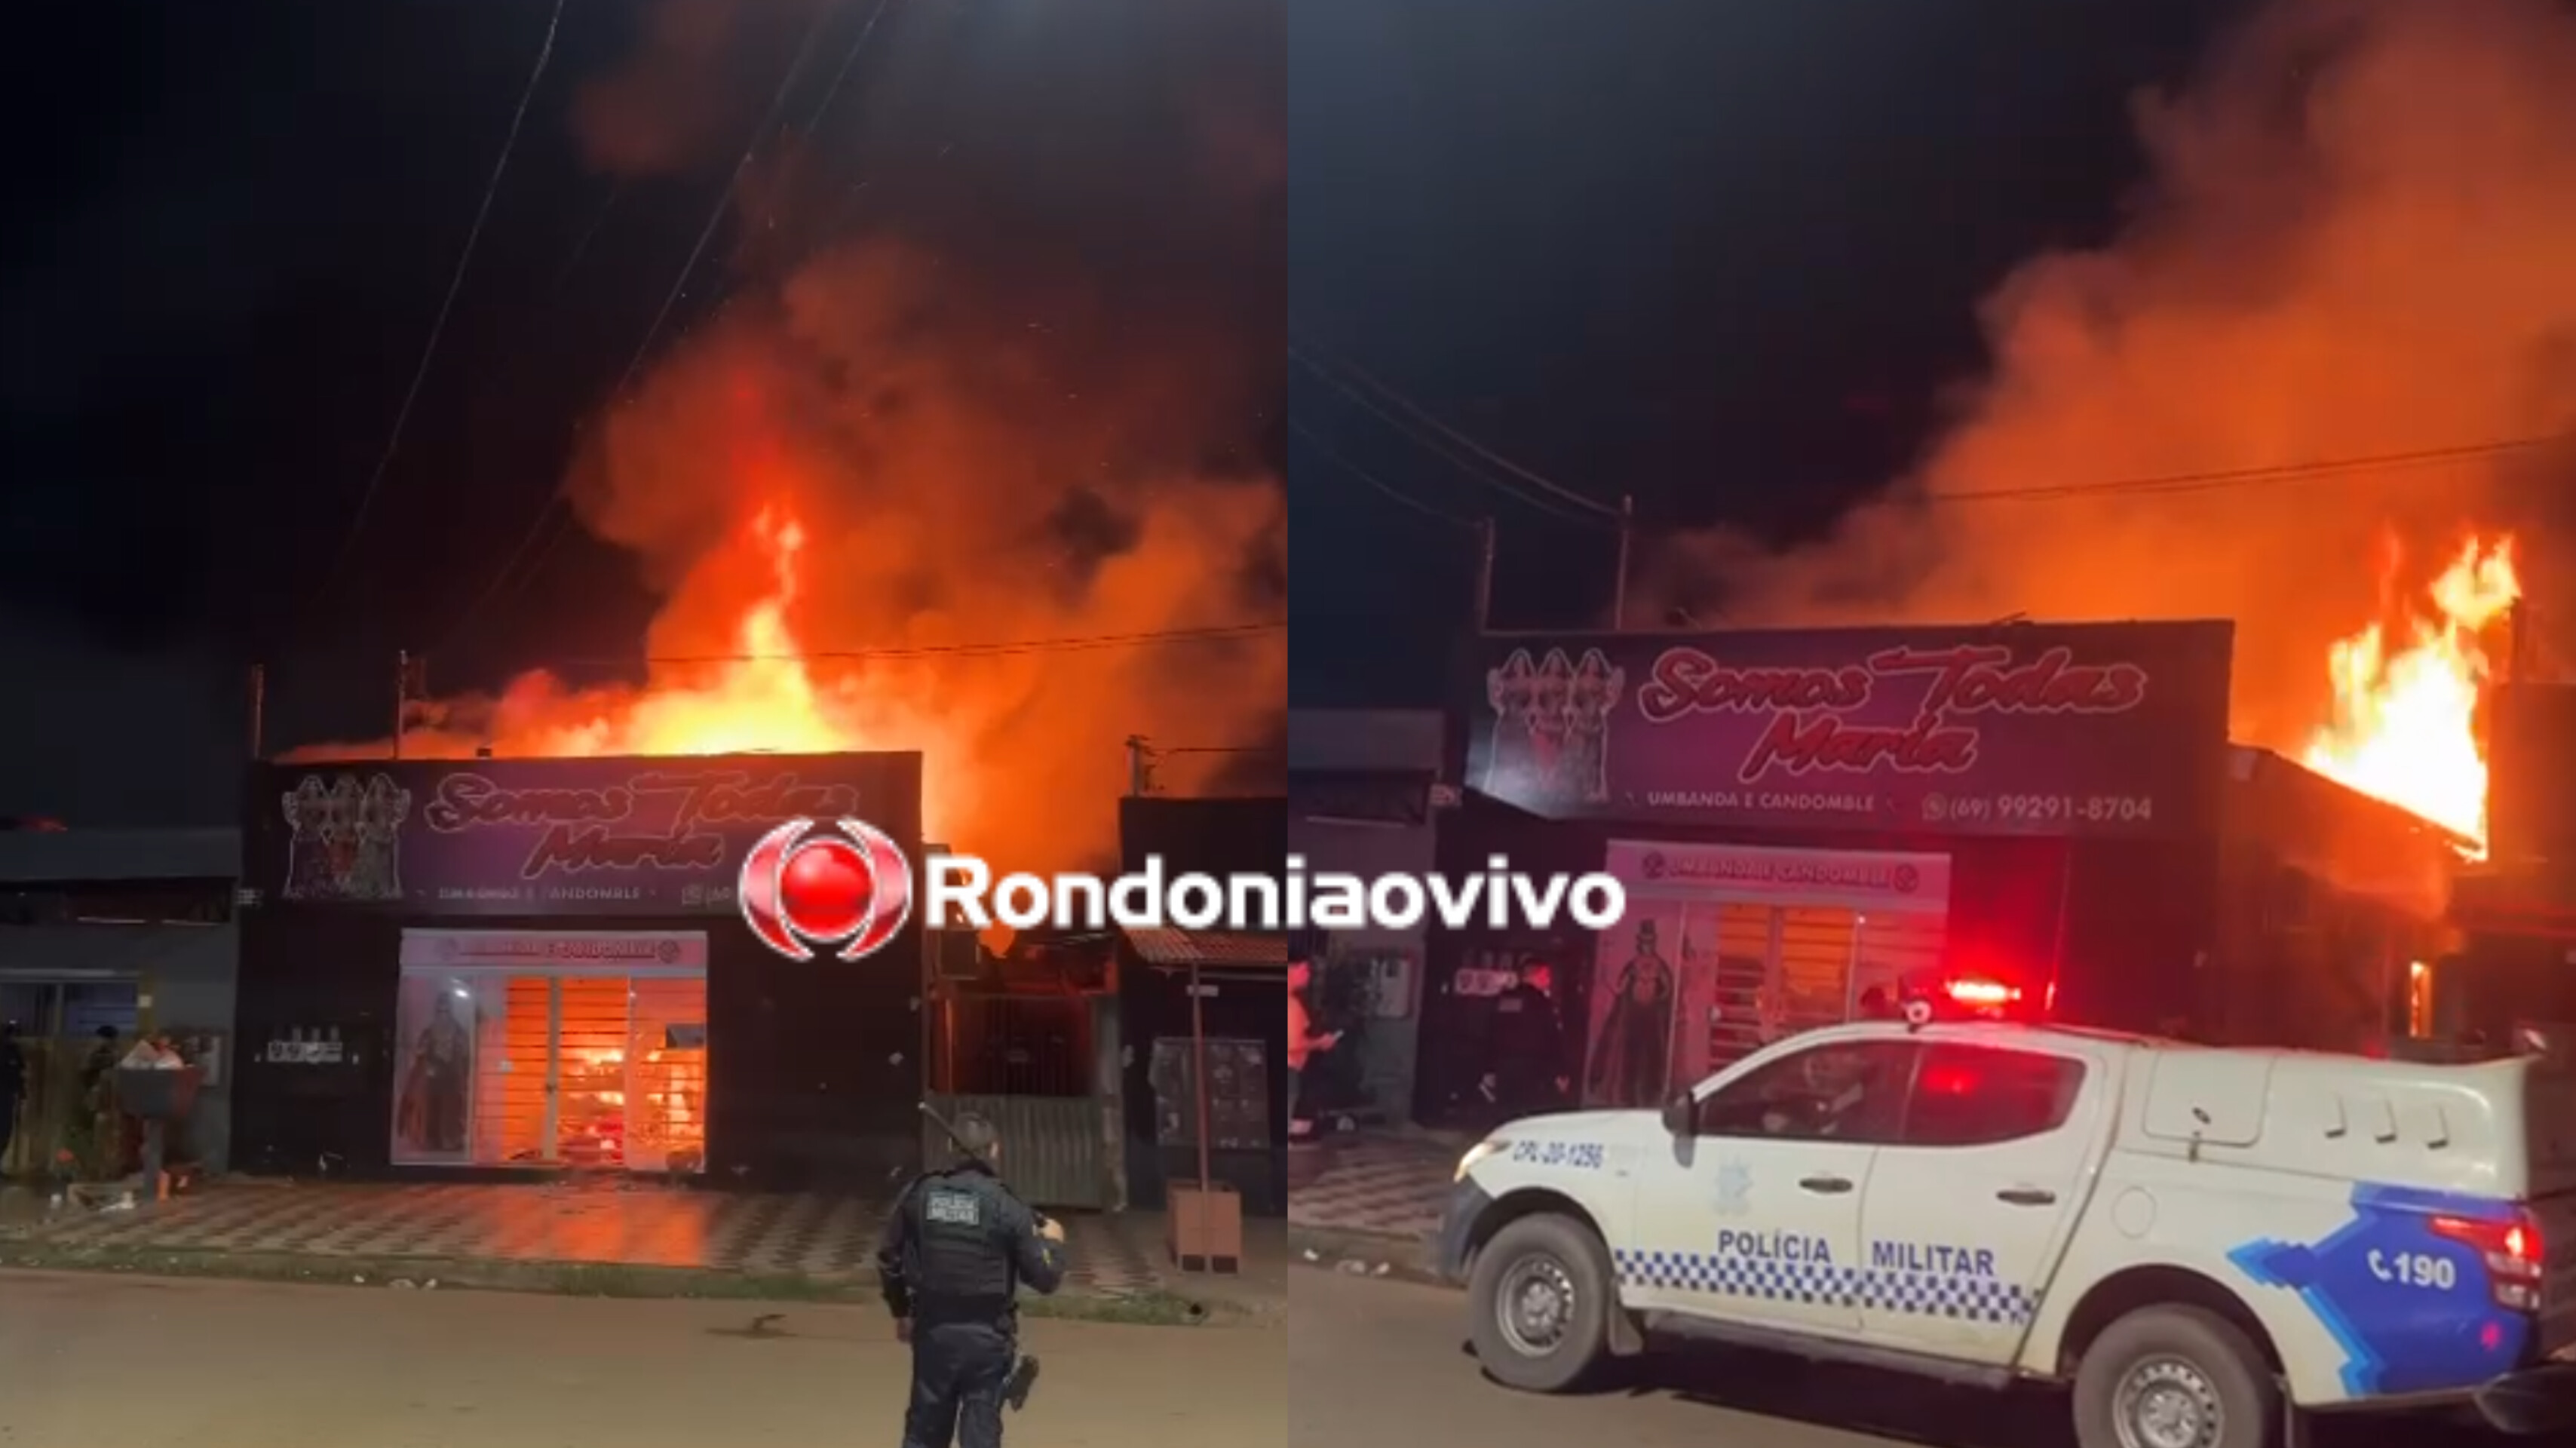 SINISTRO: Loja de umbanda e candomblé é destruída por incêndio - VÍDEO 